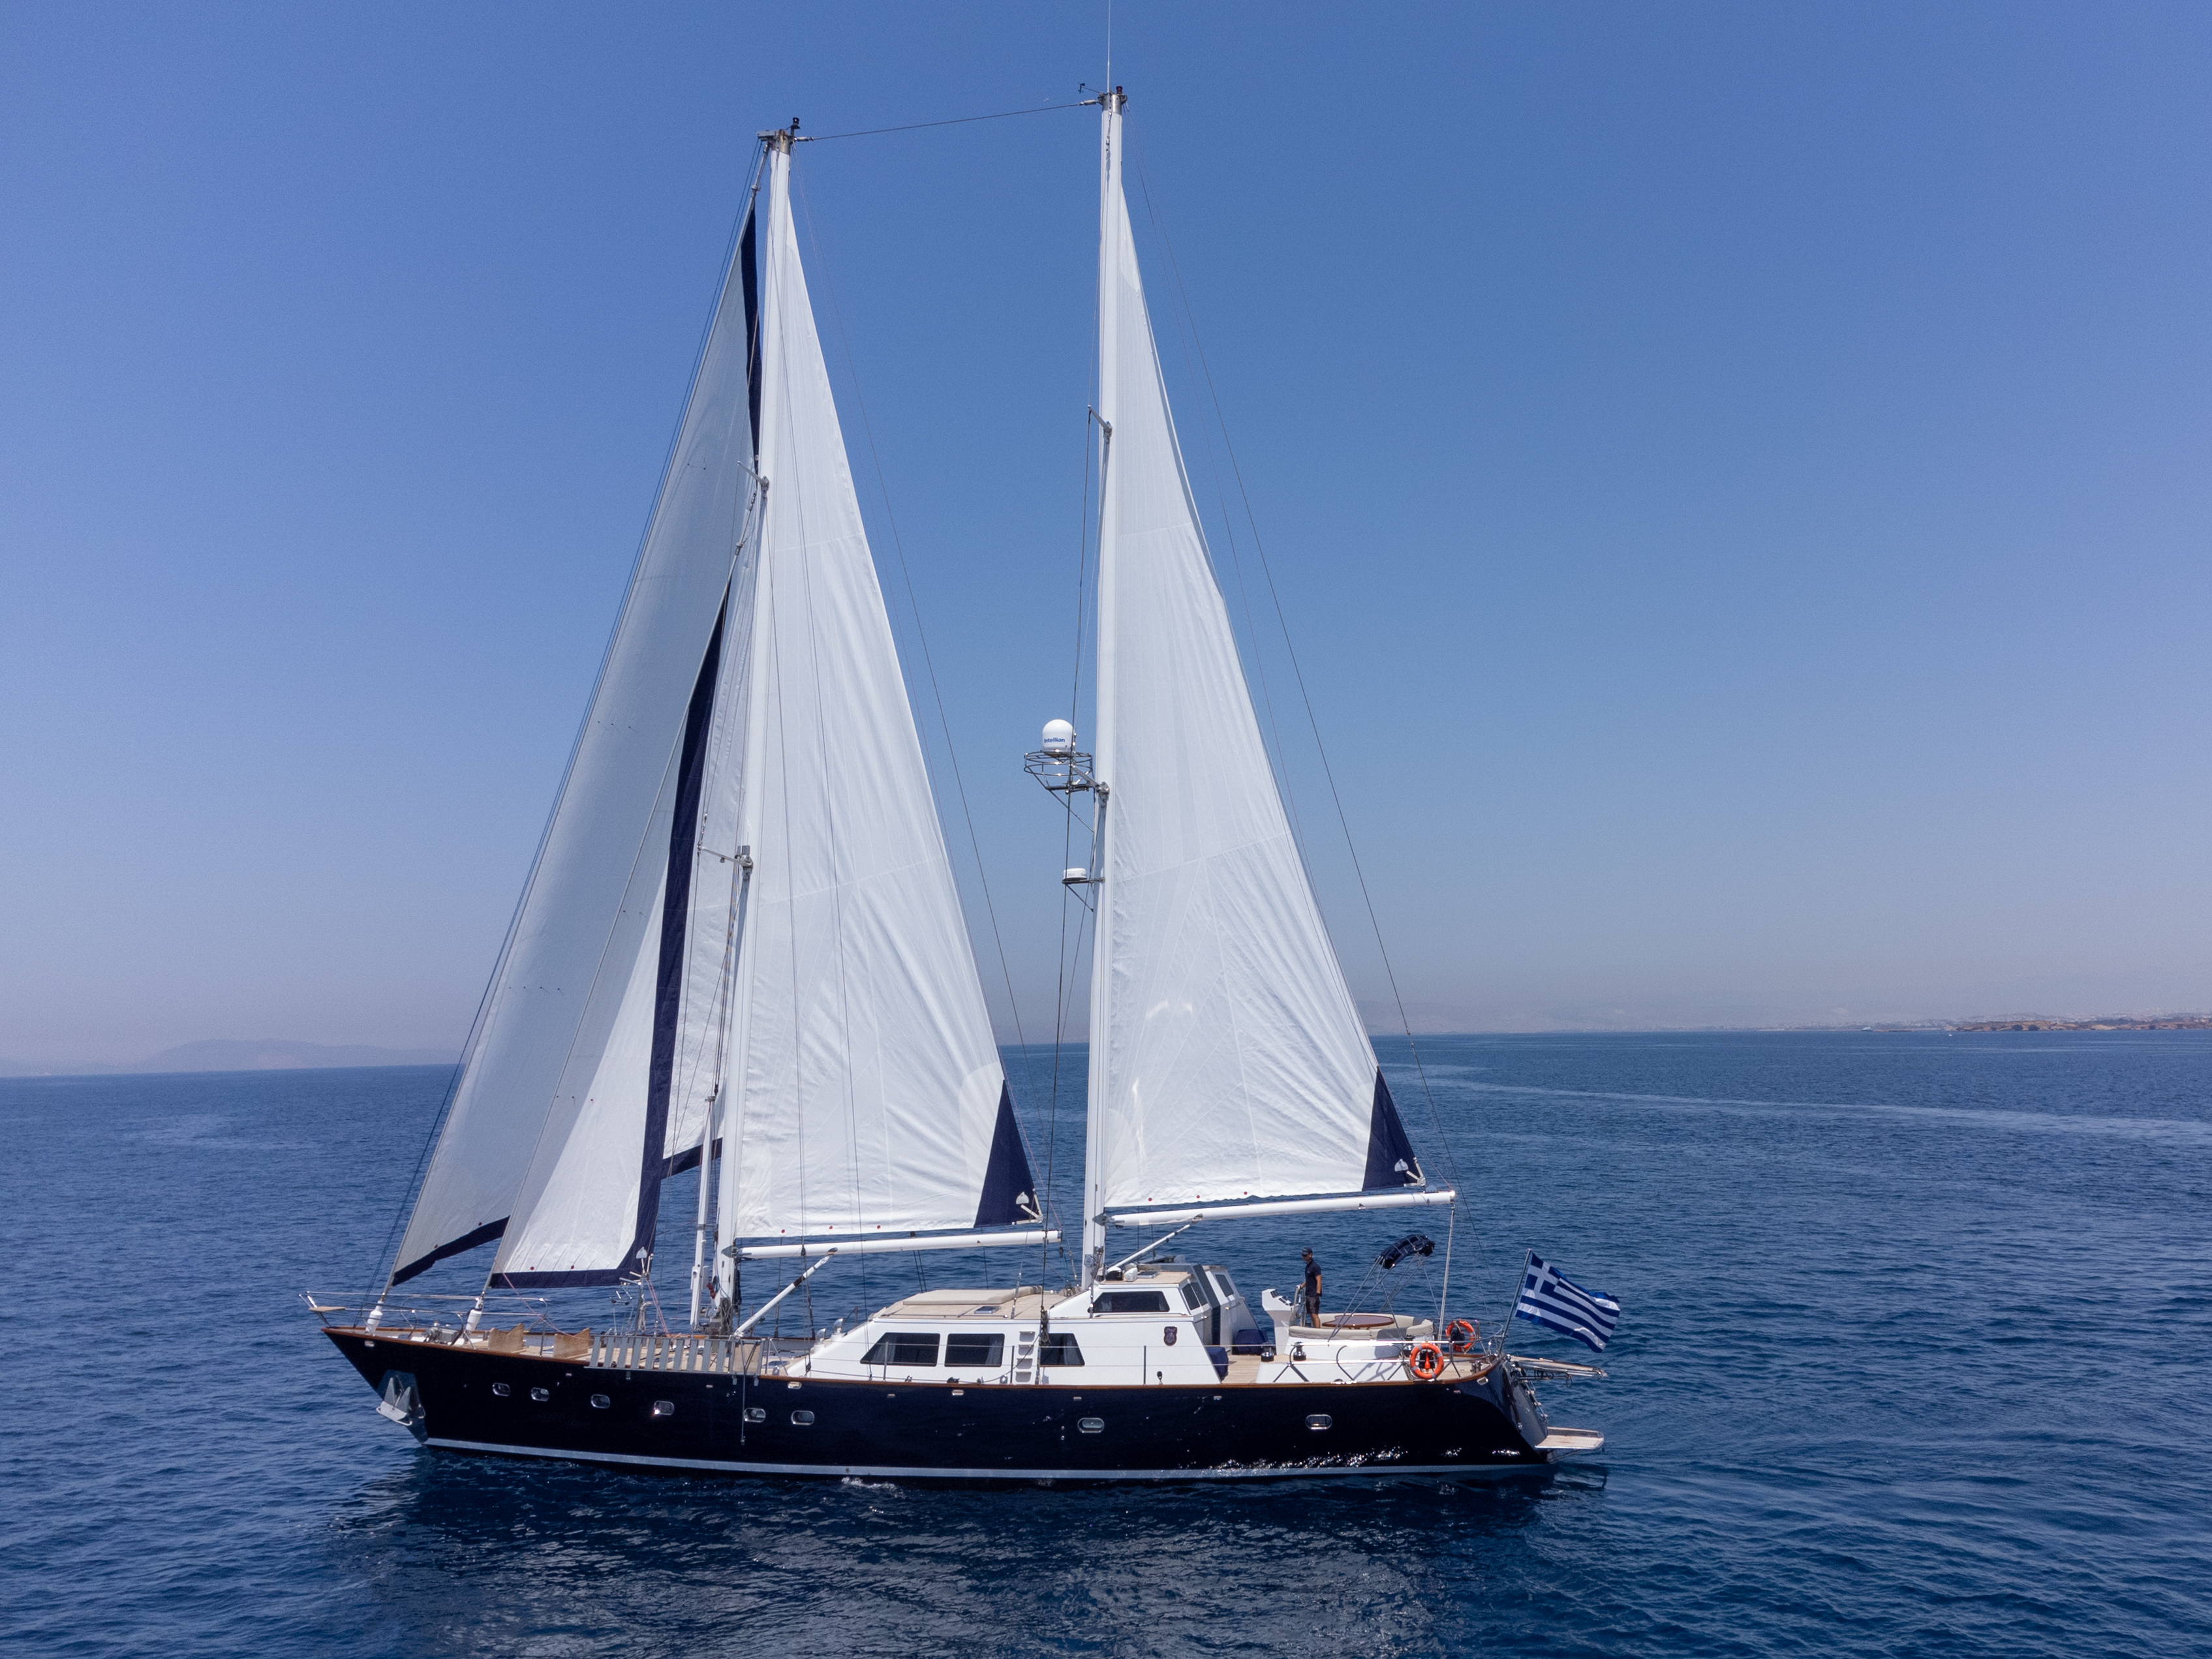 CCYD 85 - Location de Goélette dans le Monde Entier & Boat hire in Greece Athens and Saronic Gulf Athens Piraeus Marina Zea 5